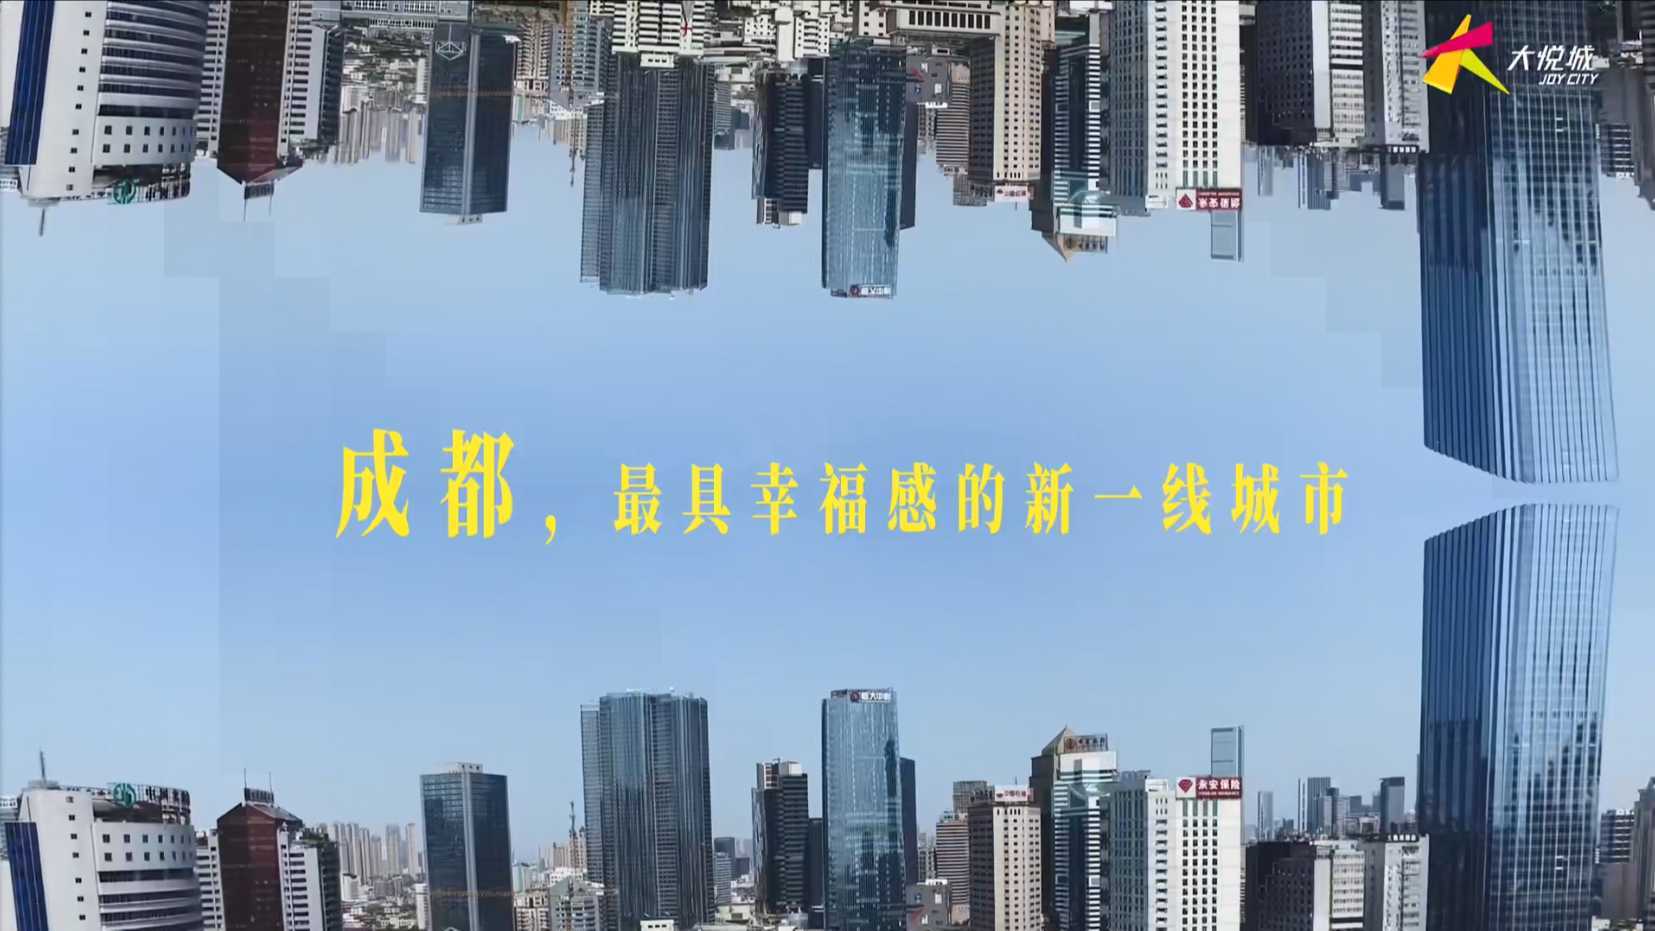 成都大悦城六周年宣传片 梵曲配音